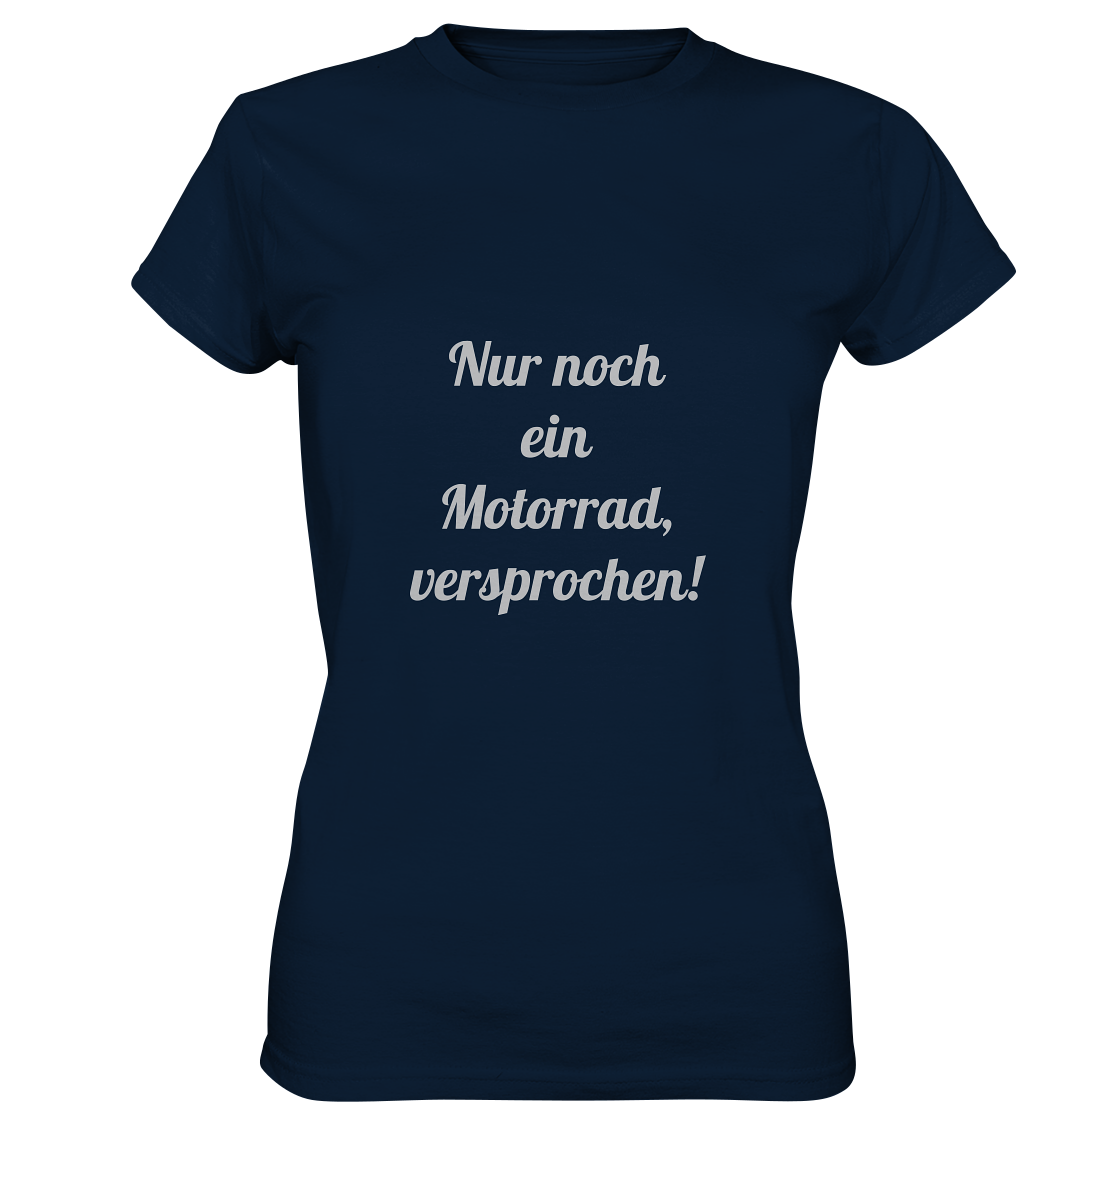 Damen-T-Shirt Rundhals-Ausschnitt, beidseitig bedruckt, vorn "Nur noch ein Motorrad - versprochen!" hinten crossed fingers, dunkel blau